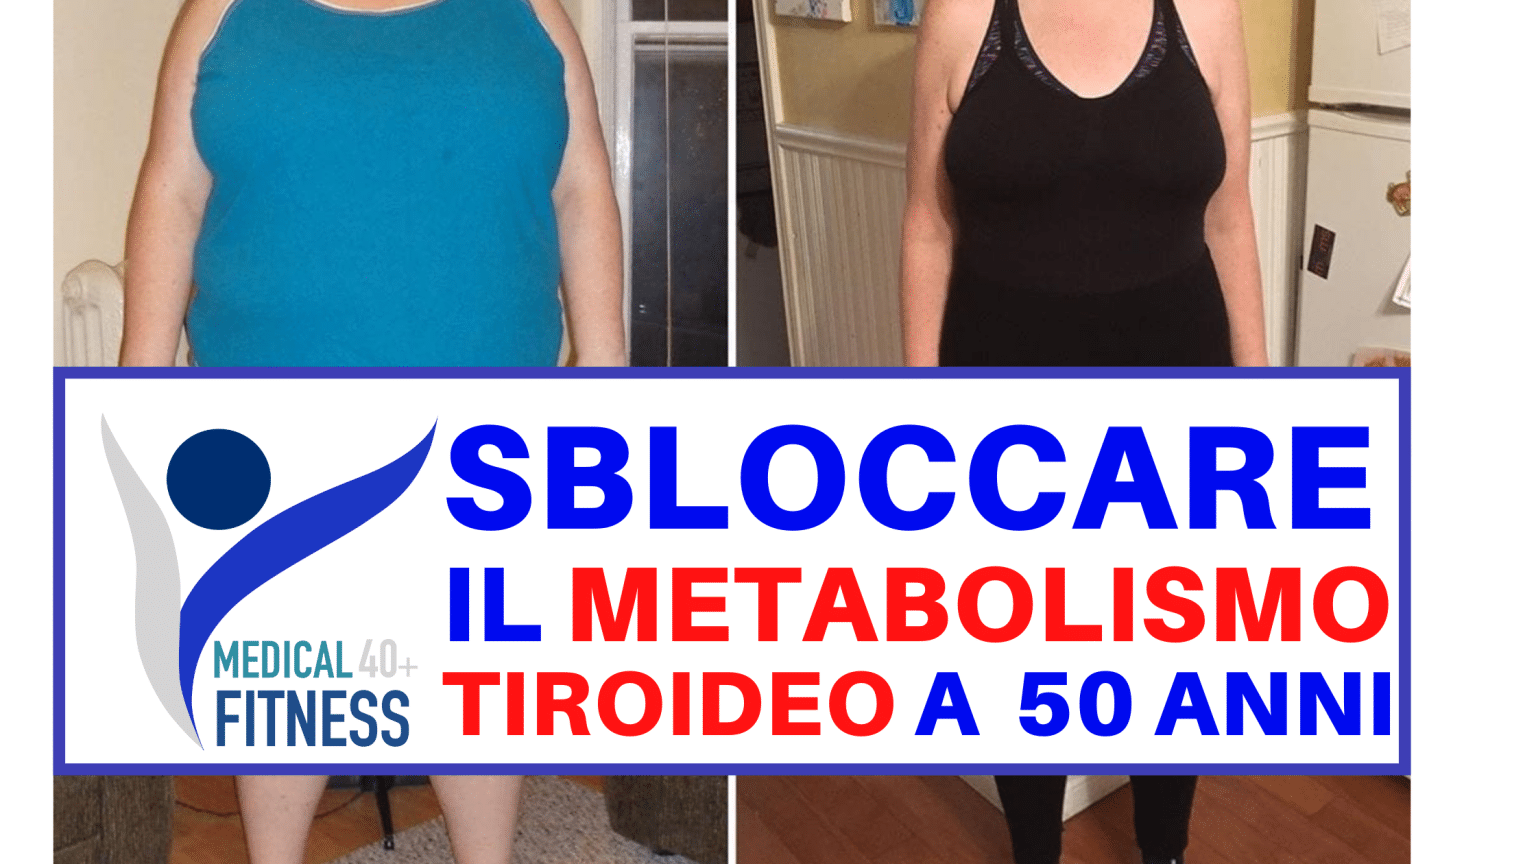 Sbloccare il metabolismo tiroideo a 50 anni